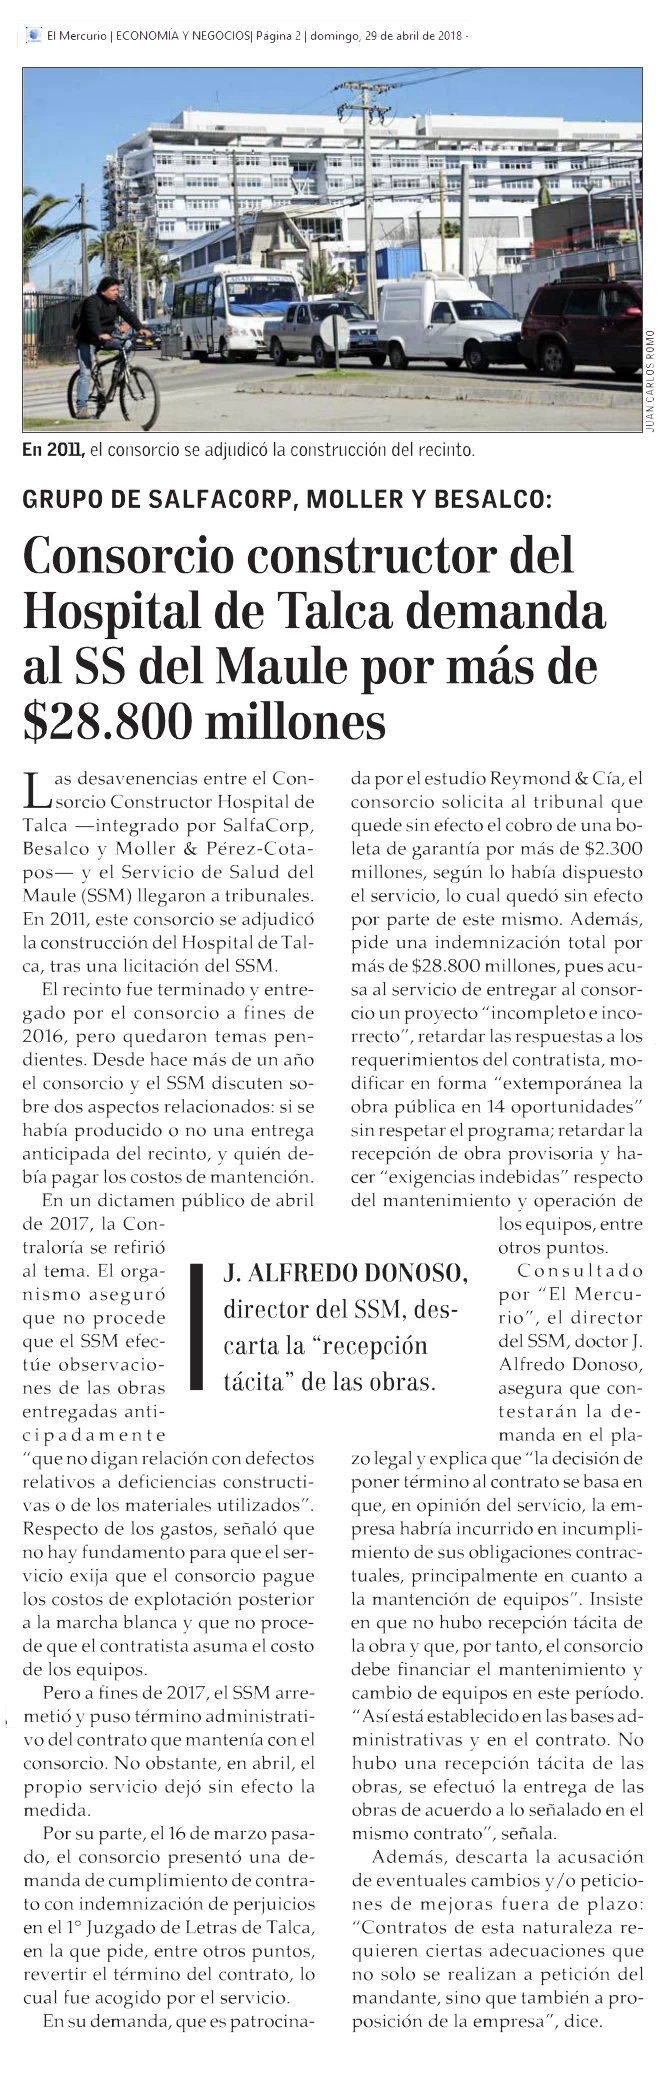 Consorcio constructor del Hospital de Talca demanda al SS del Maule por más de $28.800 millones